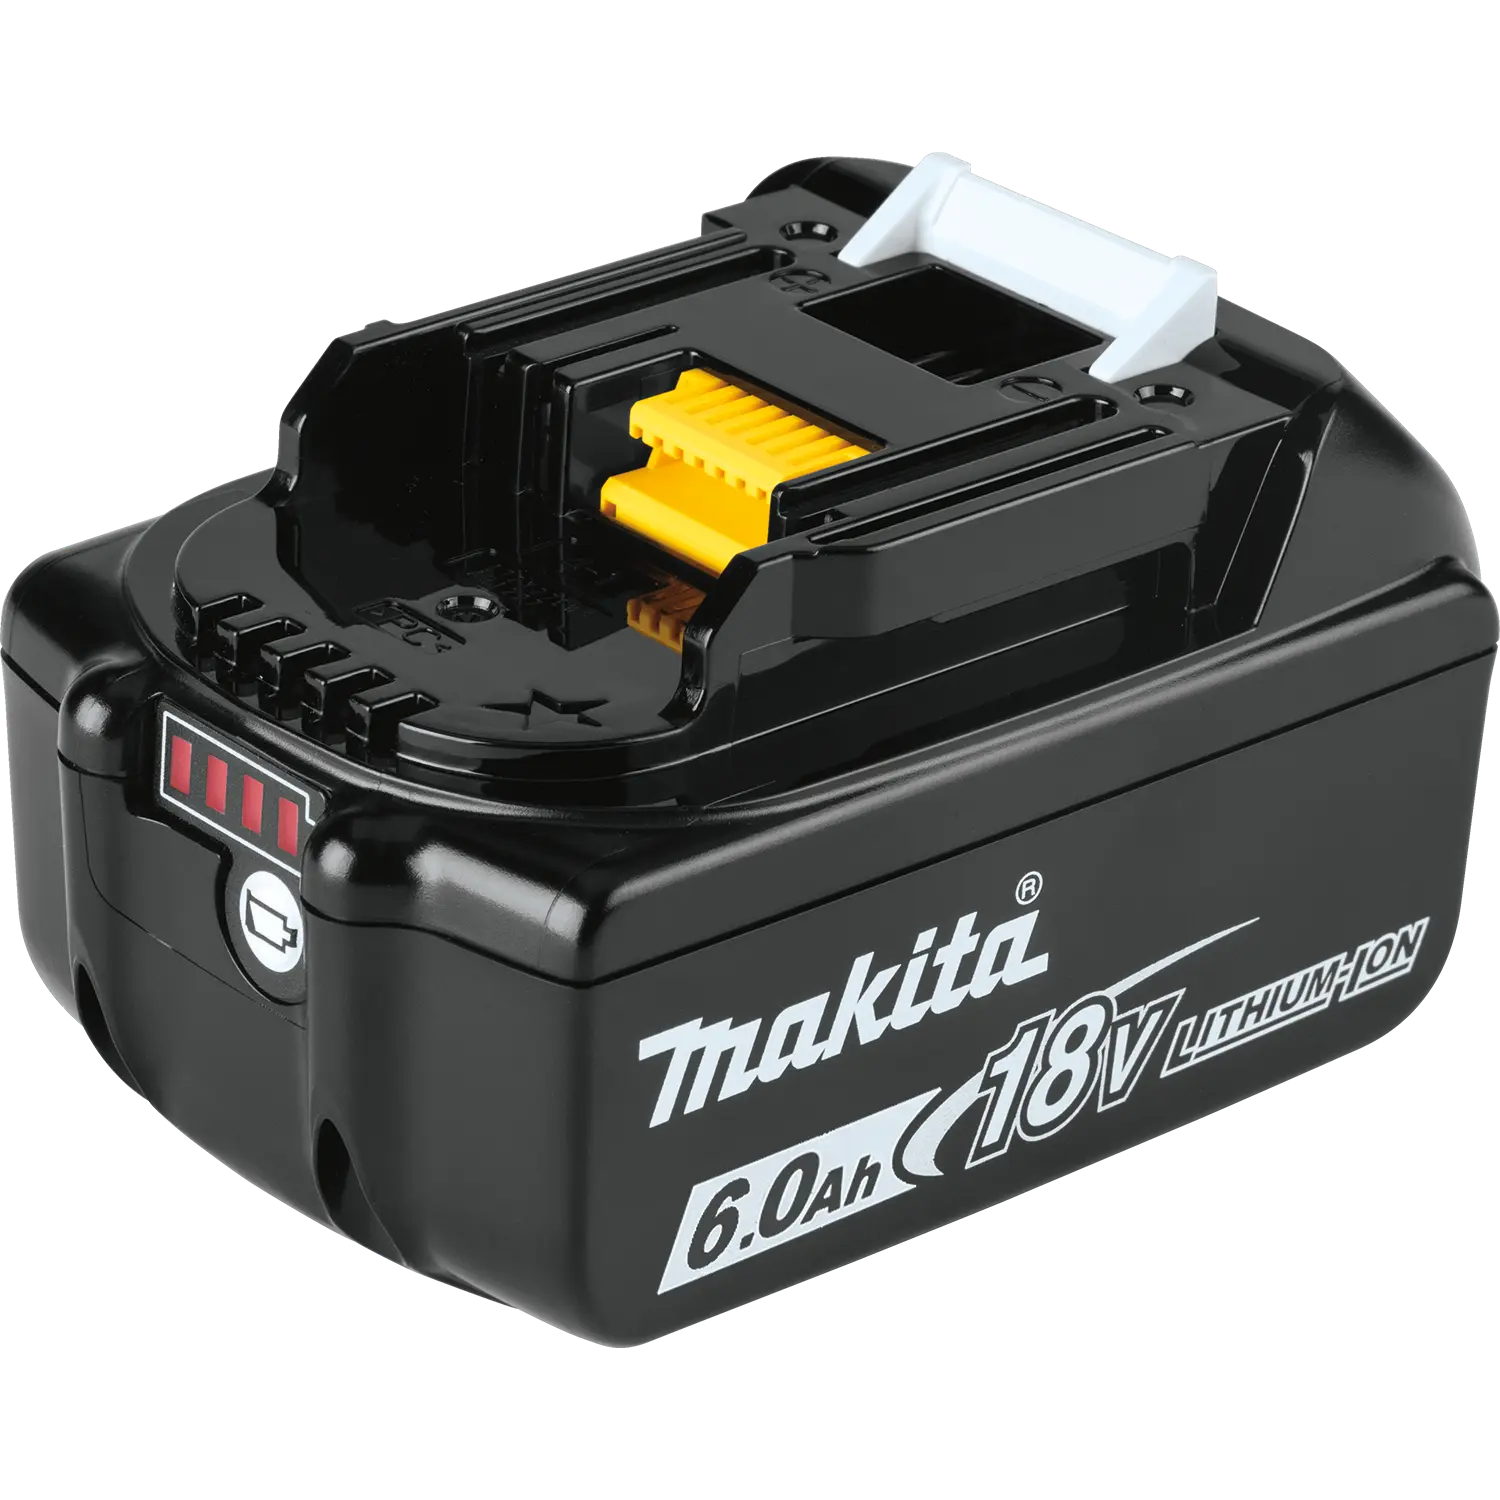 compatibilidad baterias makita - Qué significa el color negro en Makita